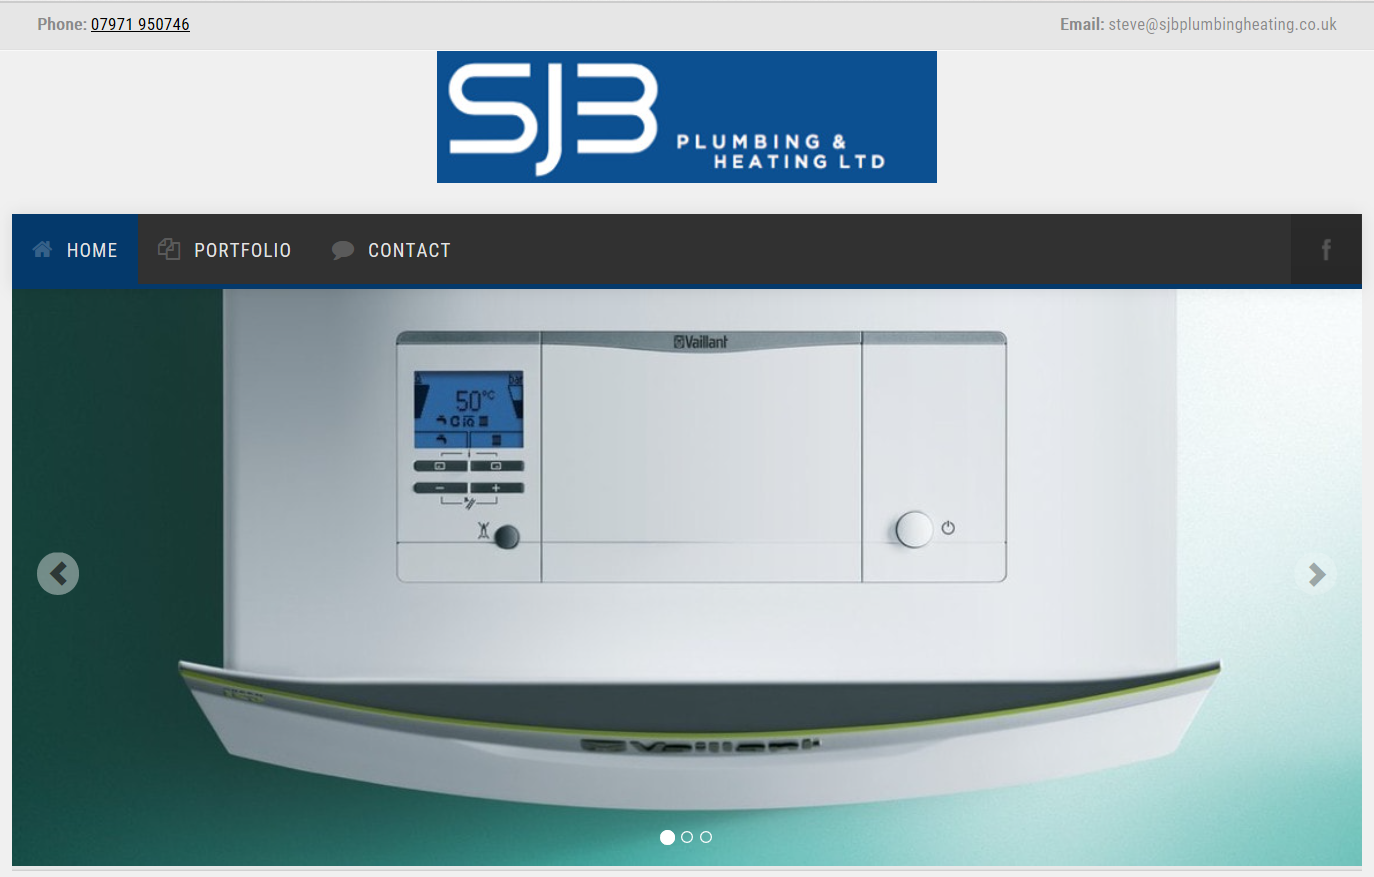 SJB Plumbing and heating website